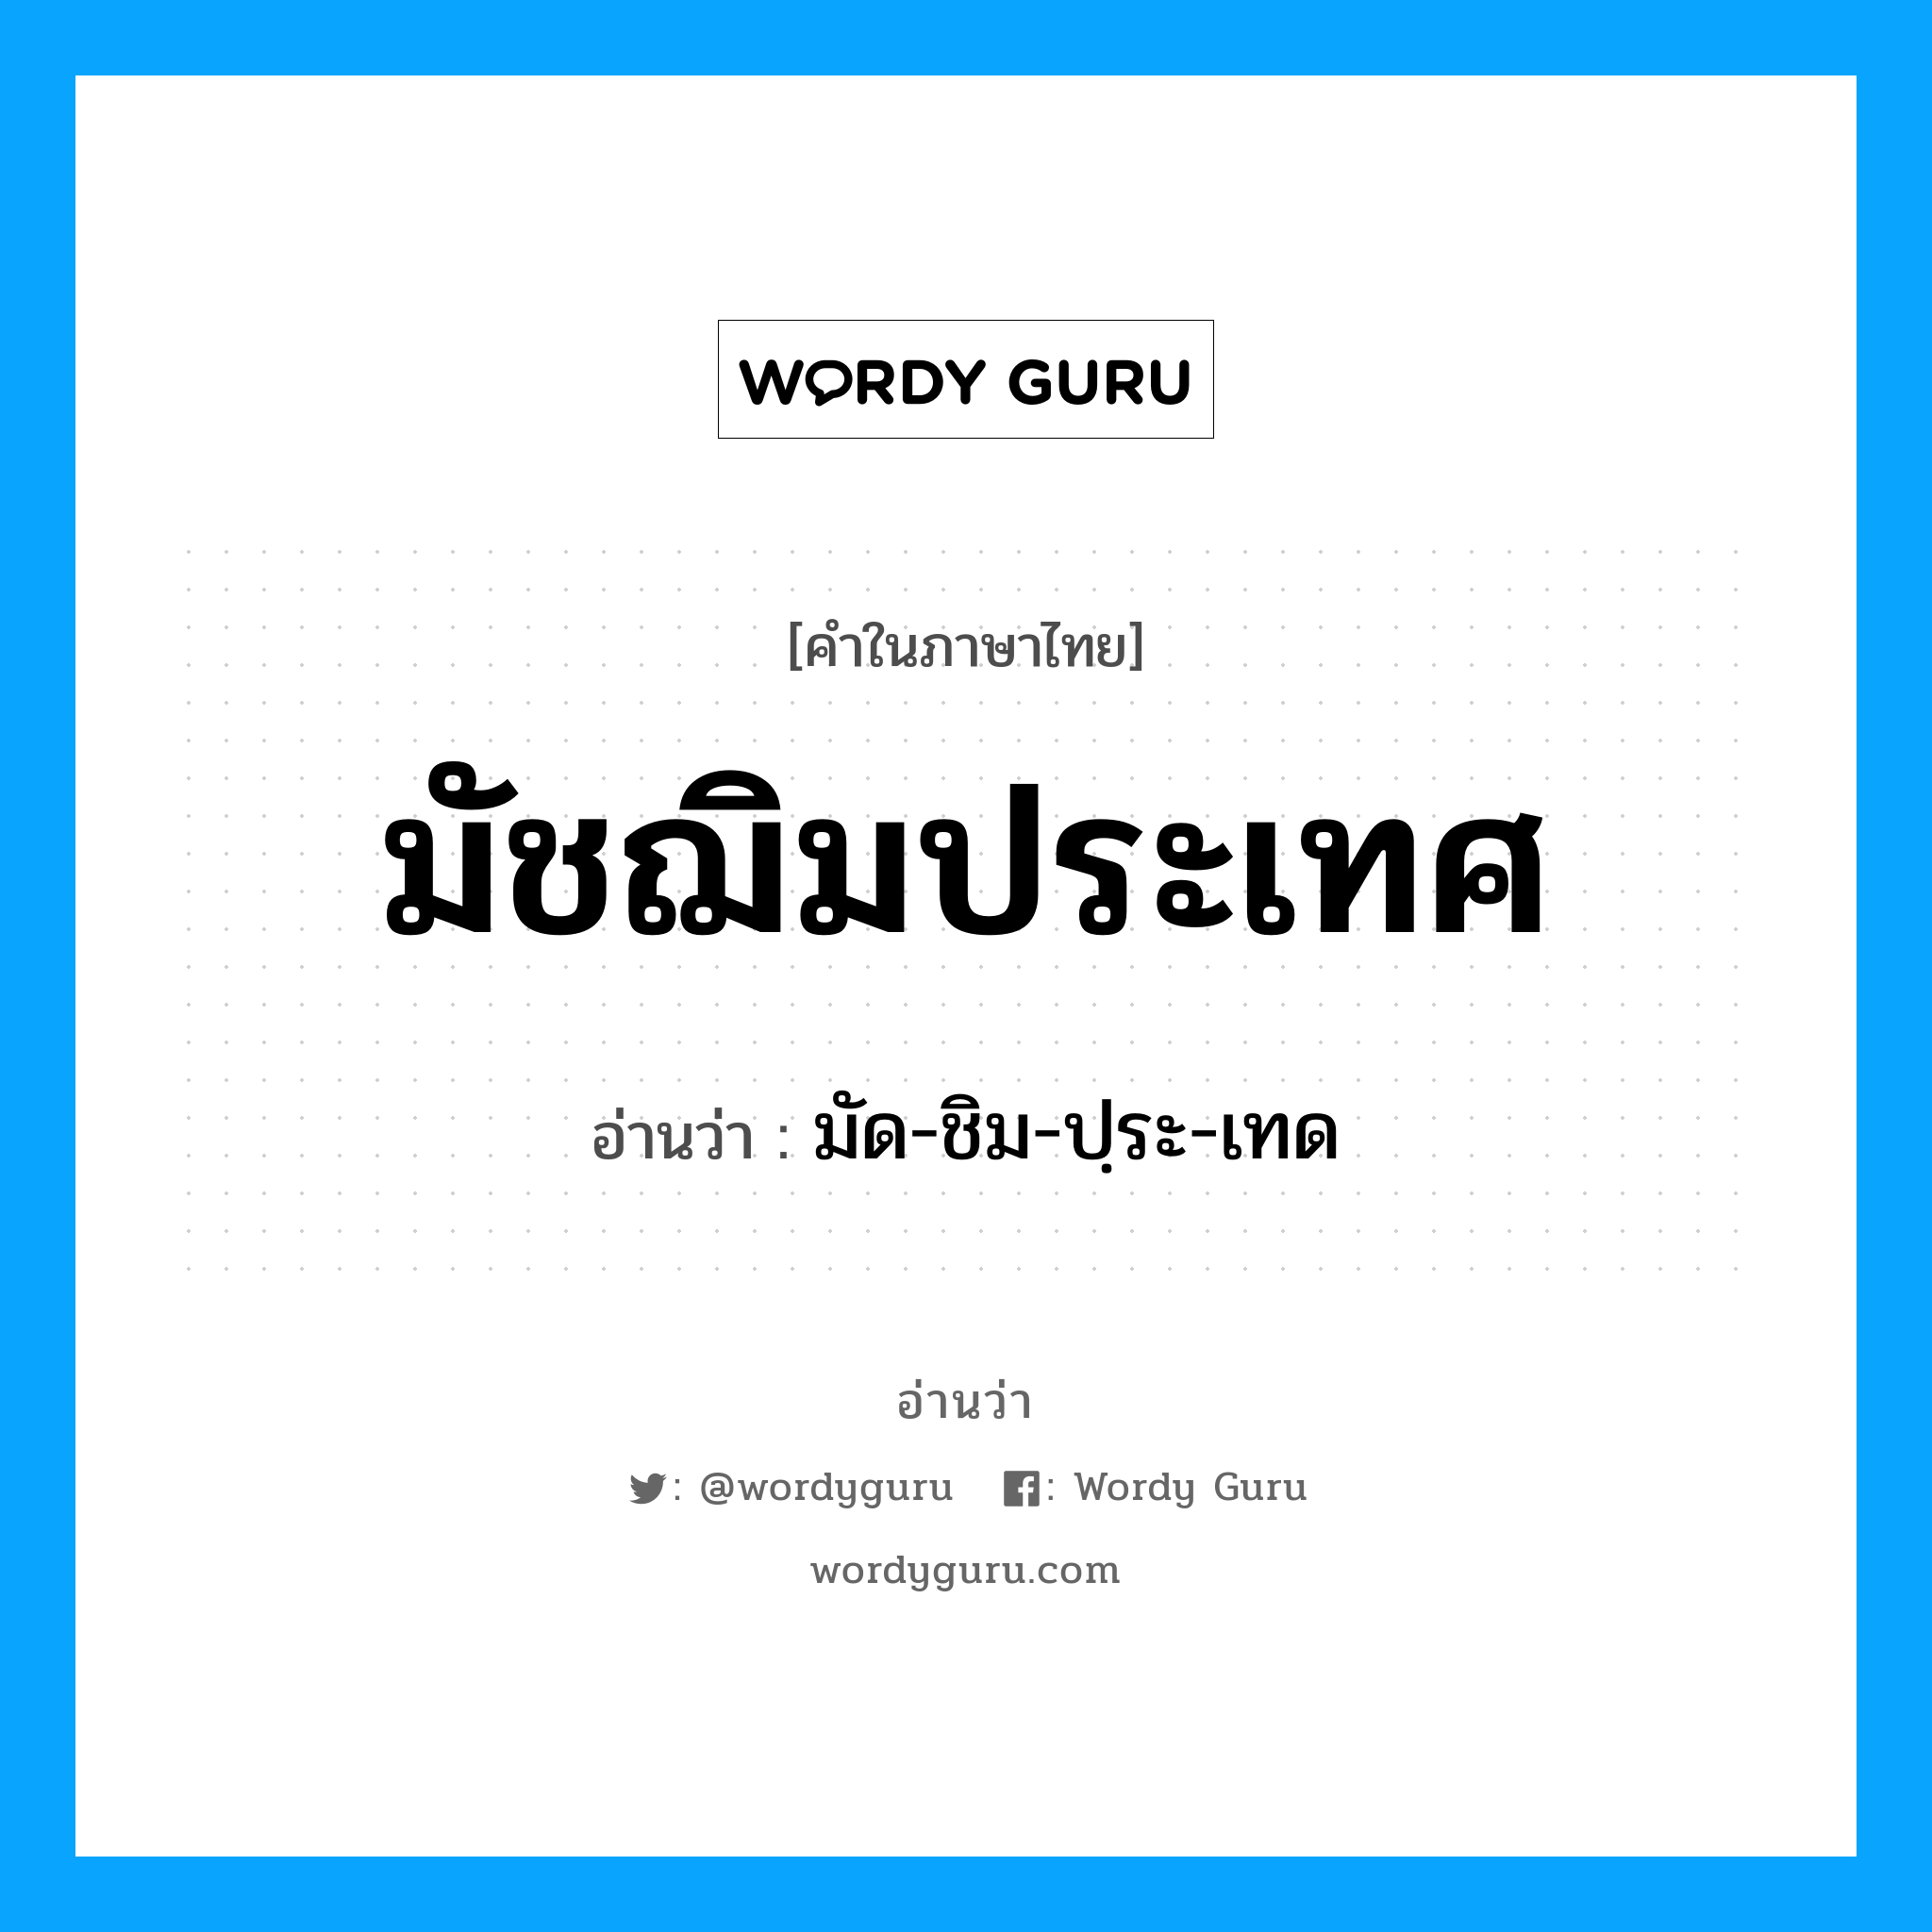 มัด-ชิม-ปฺระ-เทด เป็นคำอ่านของคำไหน?, คำในภาษาไทย มัด-ชิม-ปฺระ-เทด อ่านว่า มัชฌิมประเทศ